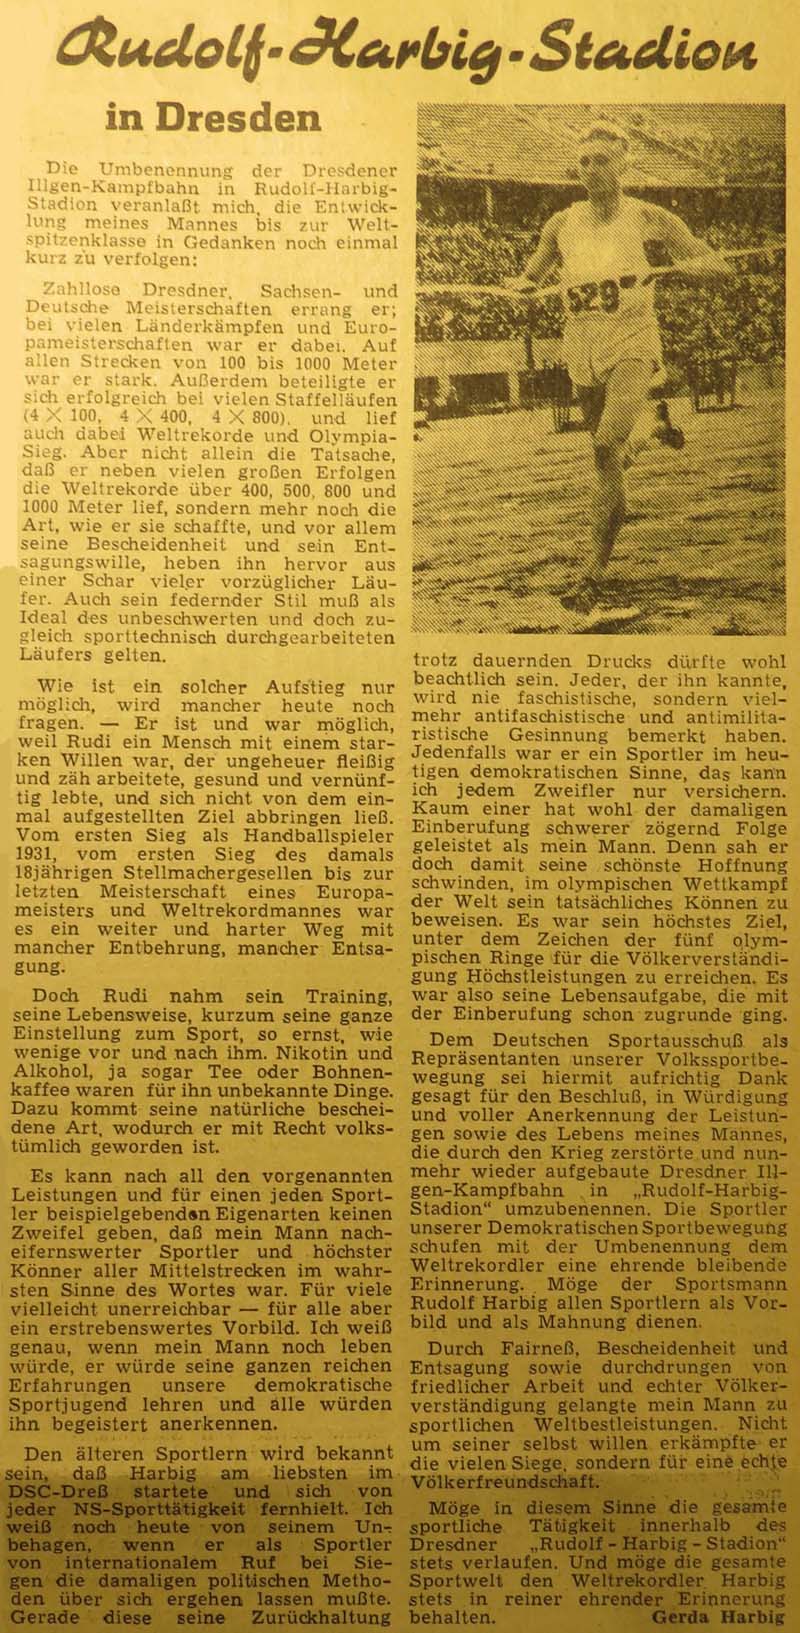 Artikel in ´Deutsches Sportecho´ vom 17. September 1951